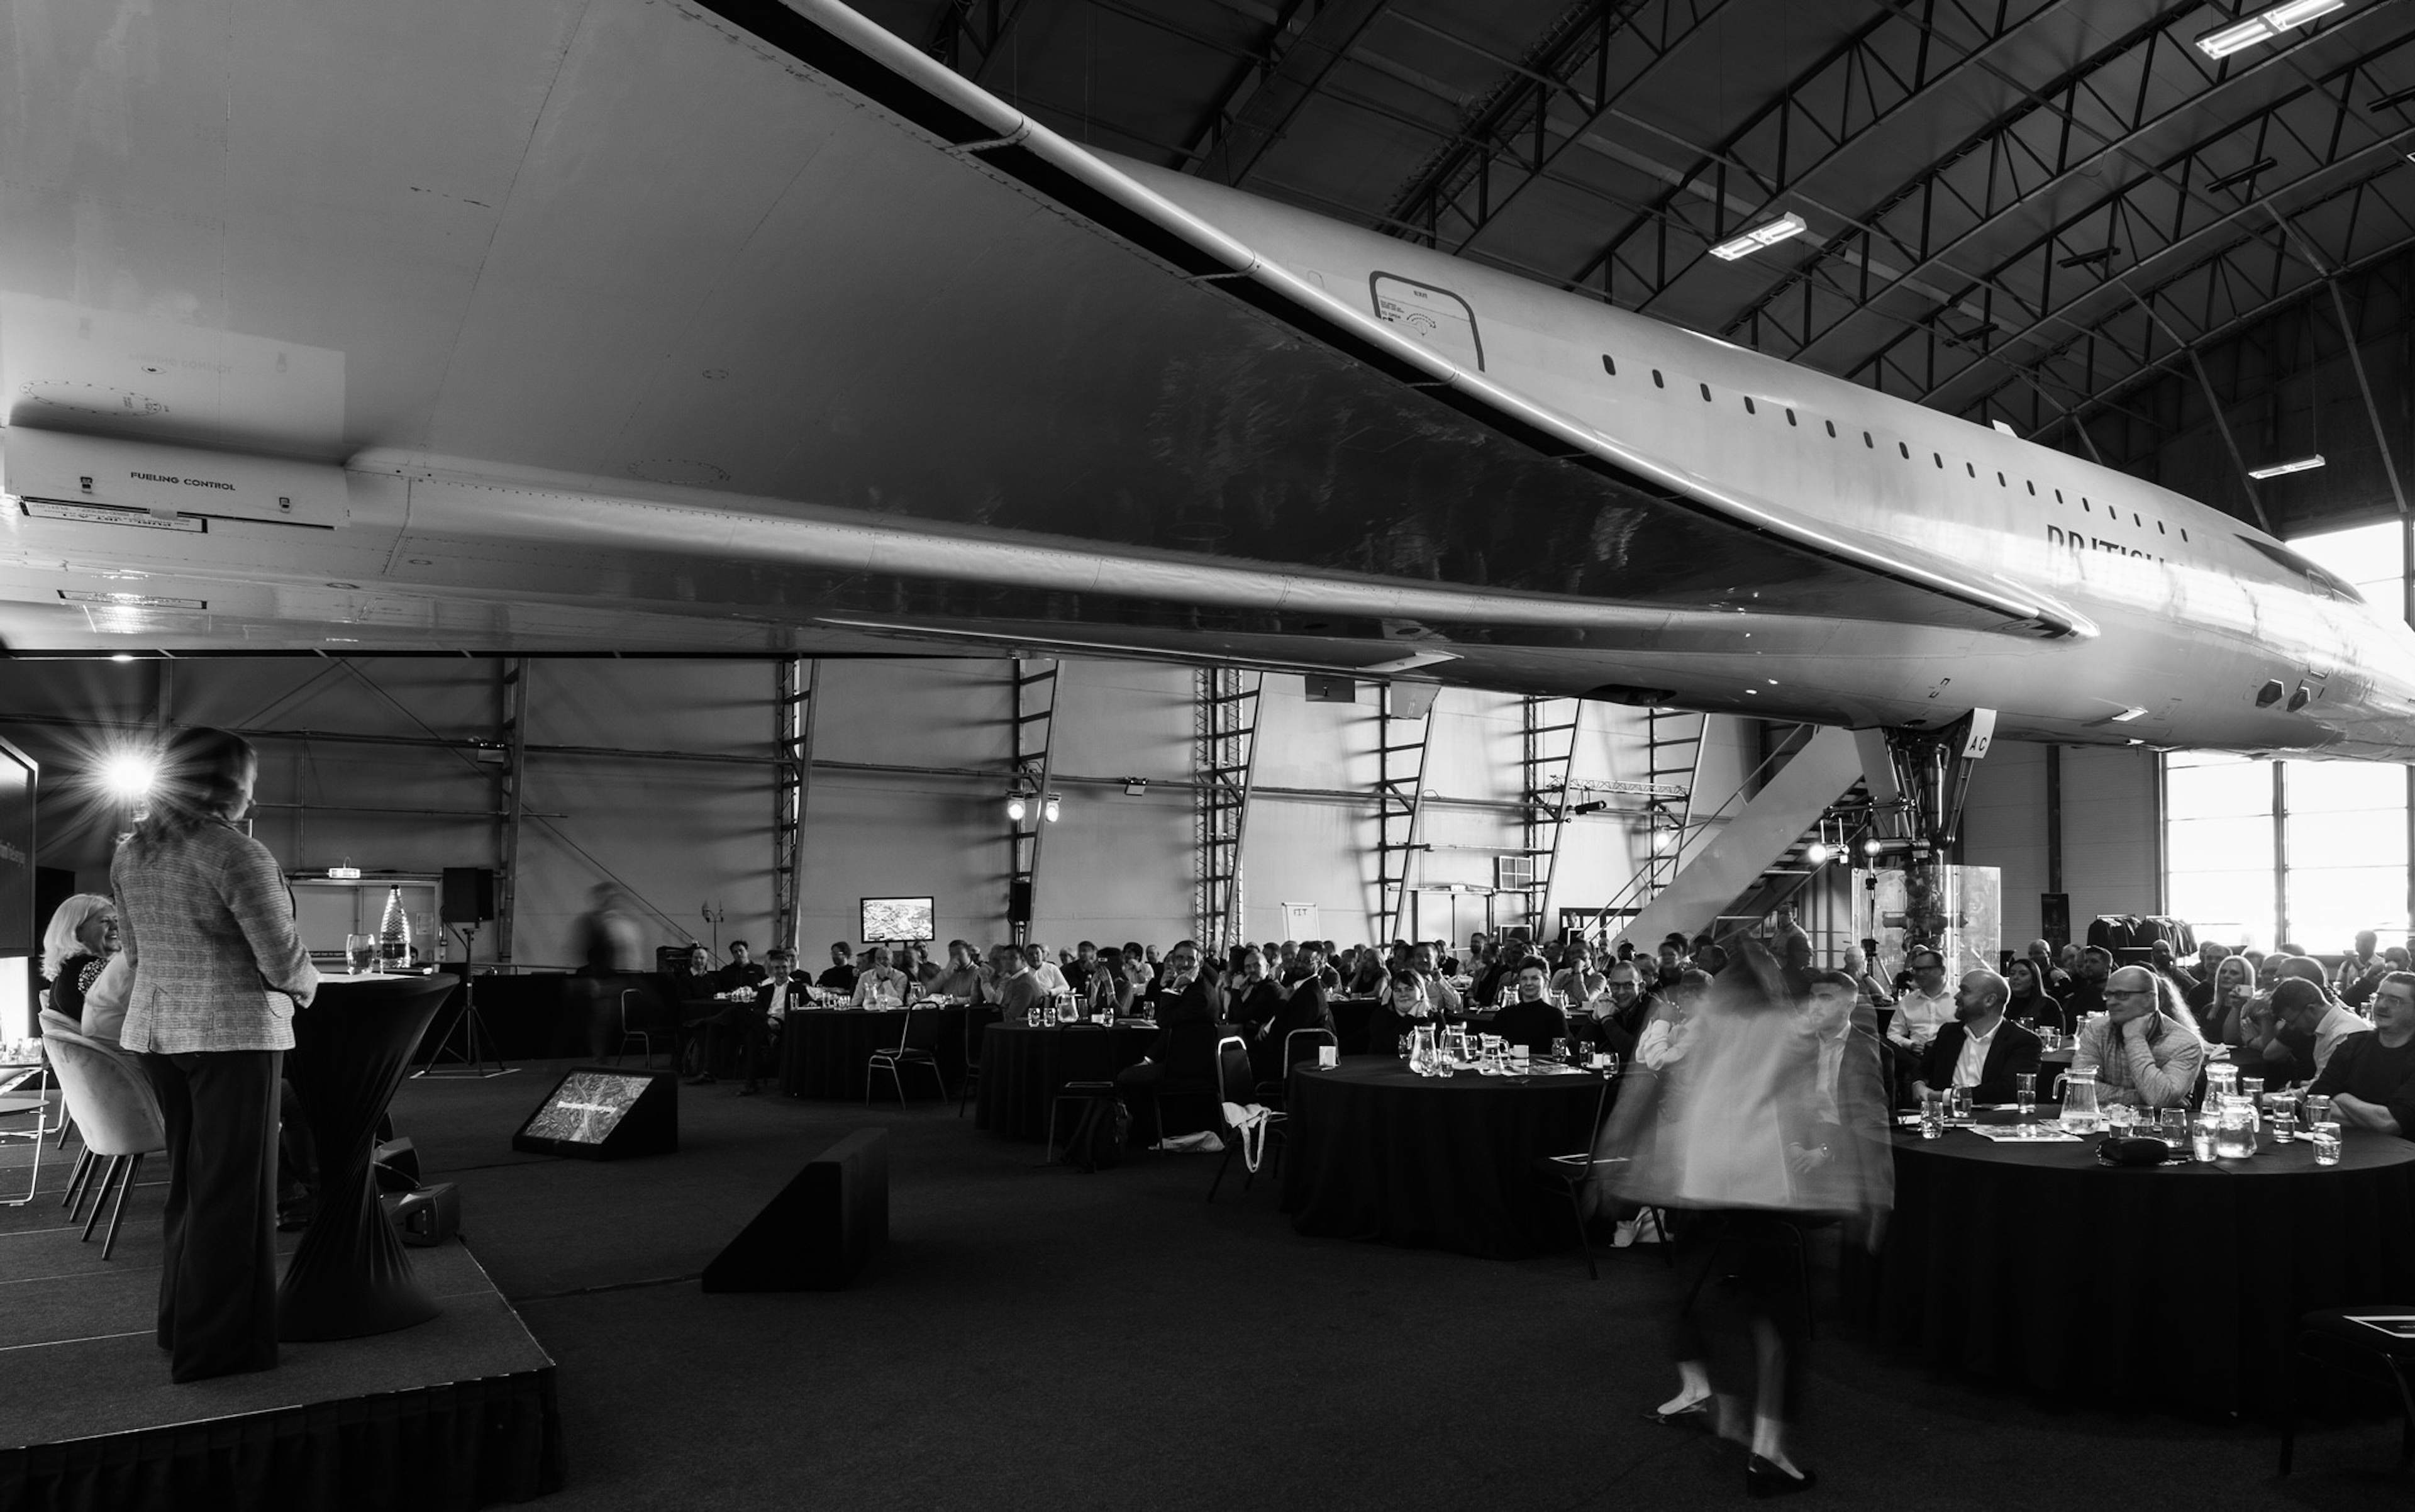 Concorde Conference Centre - image 1